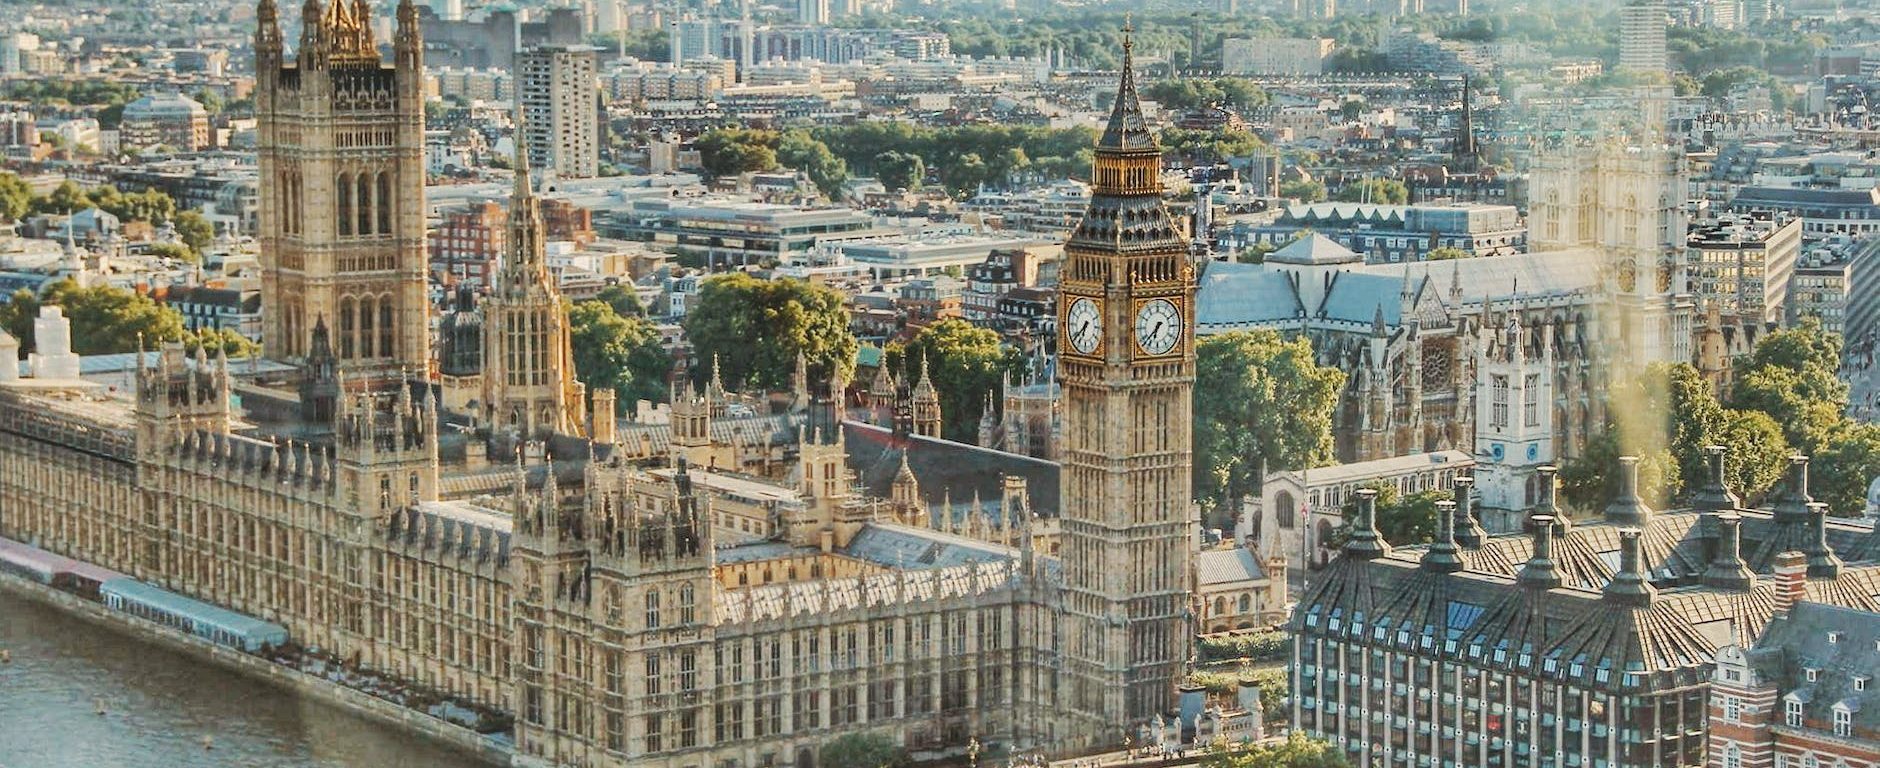 city view at london